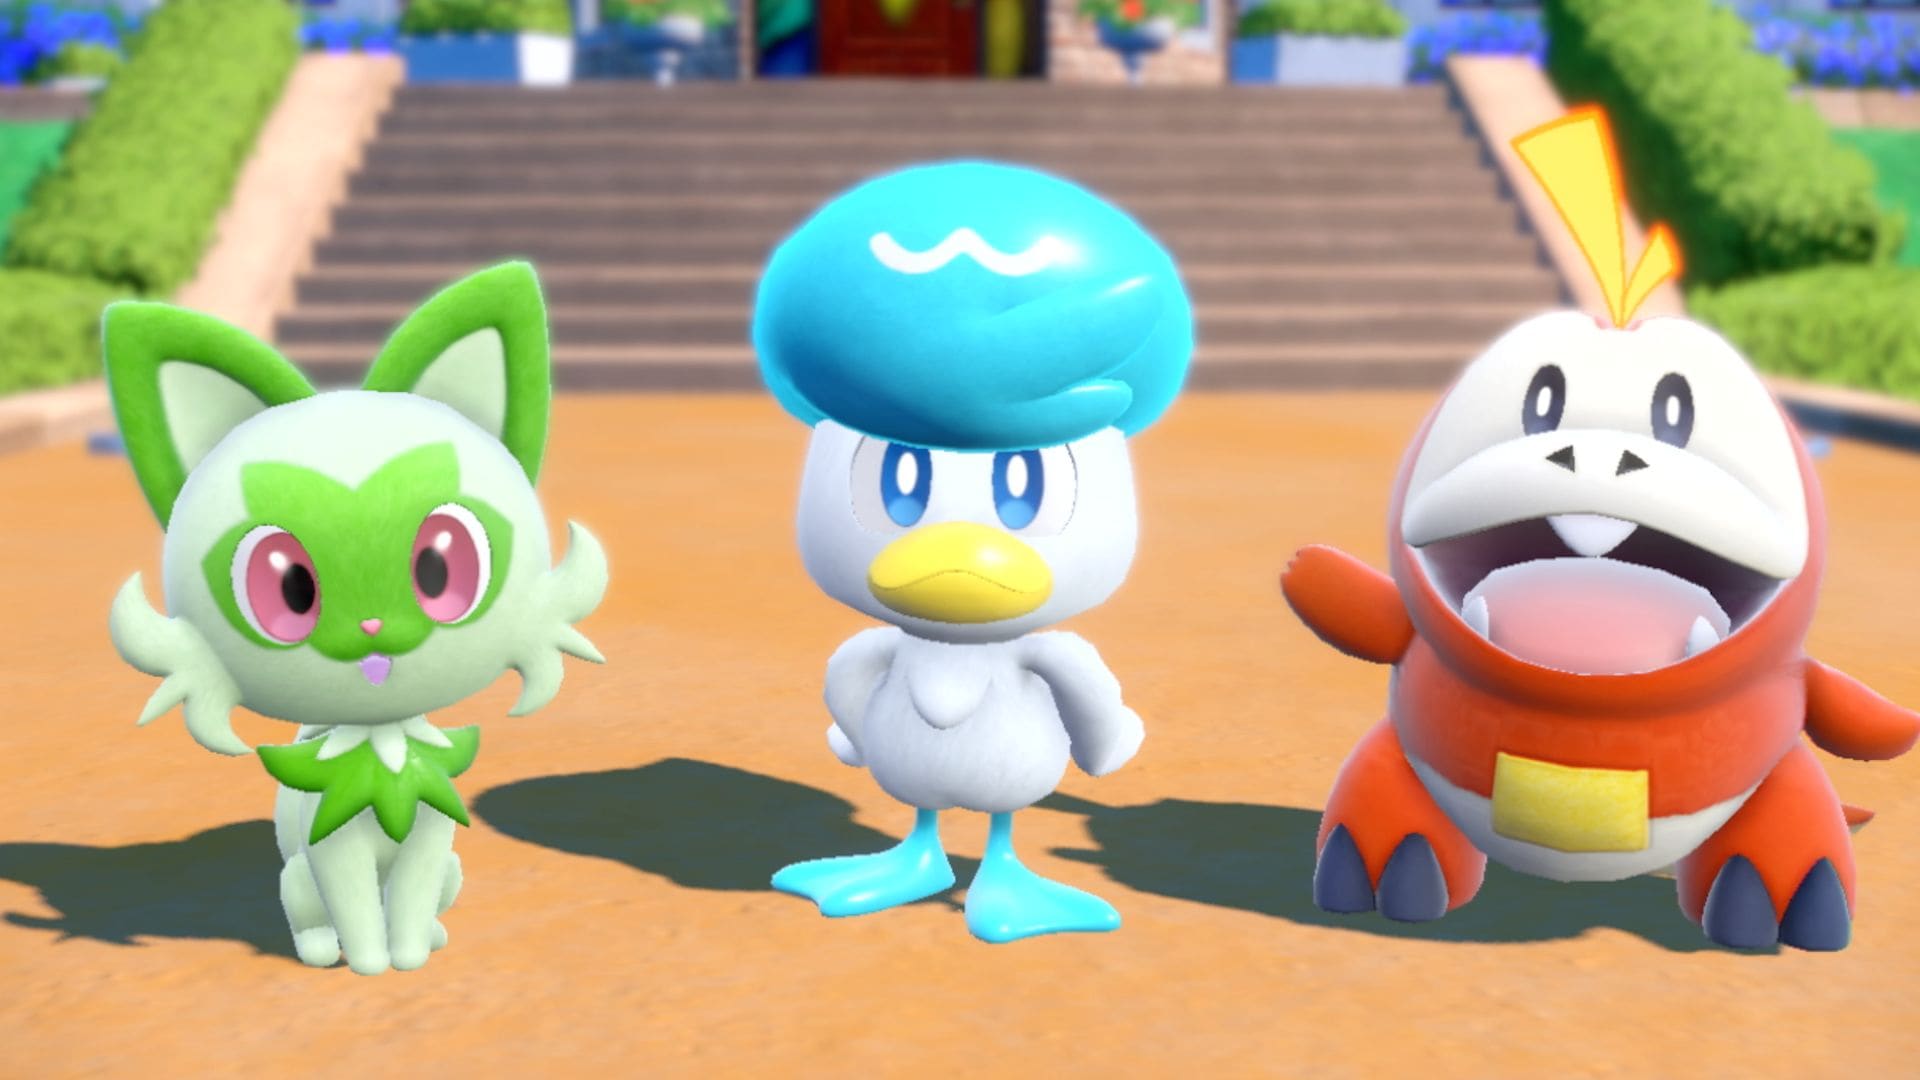 Kolme uutta Pokémon-pelihahmoa